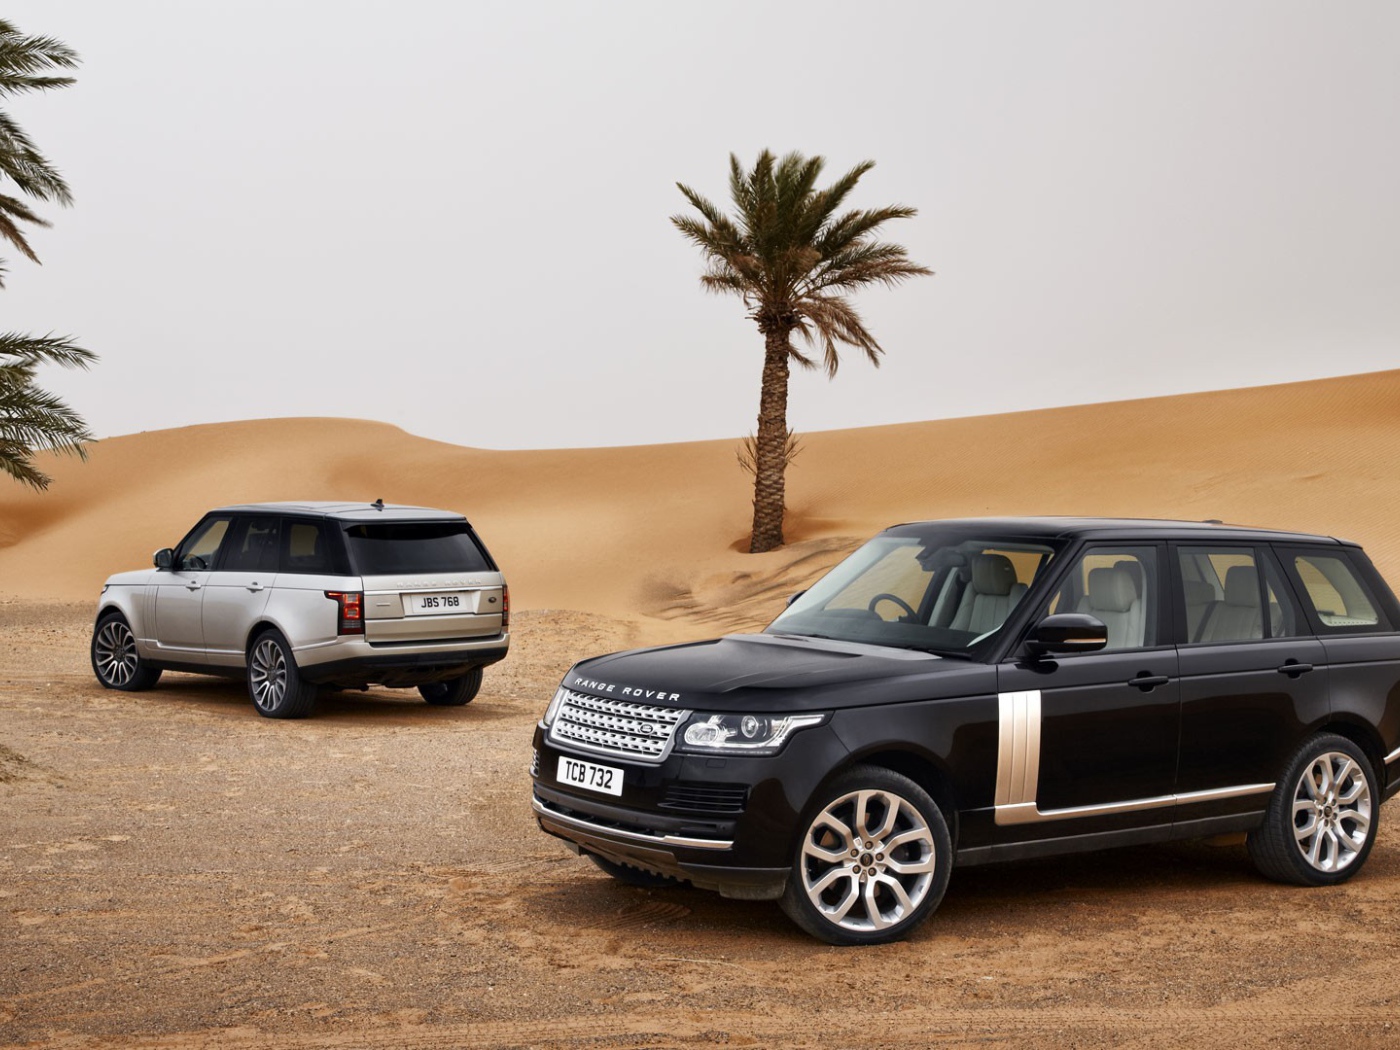 Black Range Rover in the desert